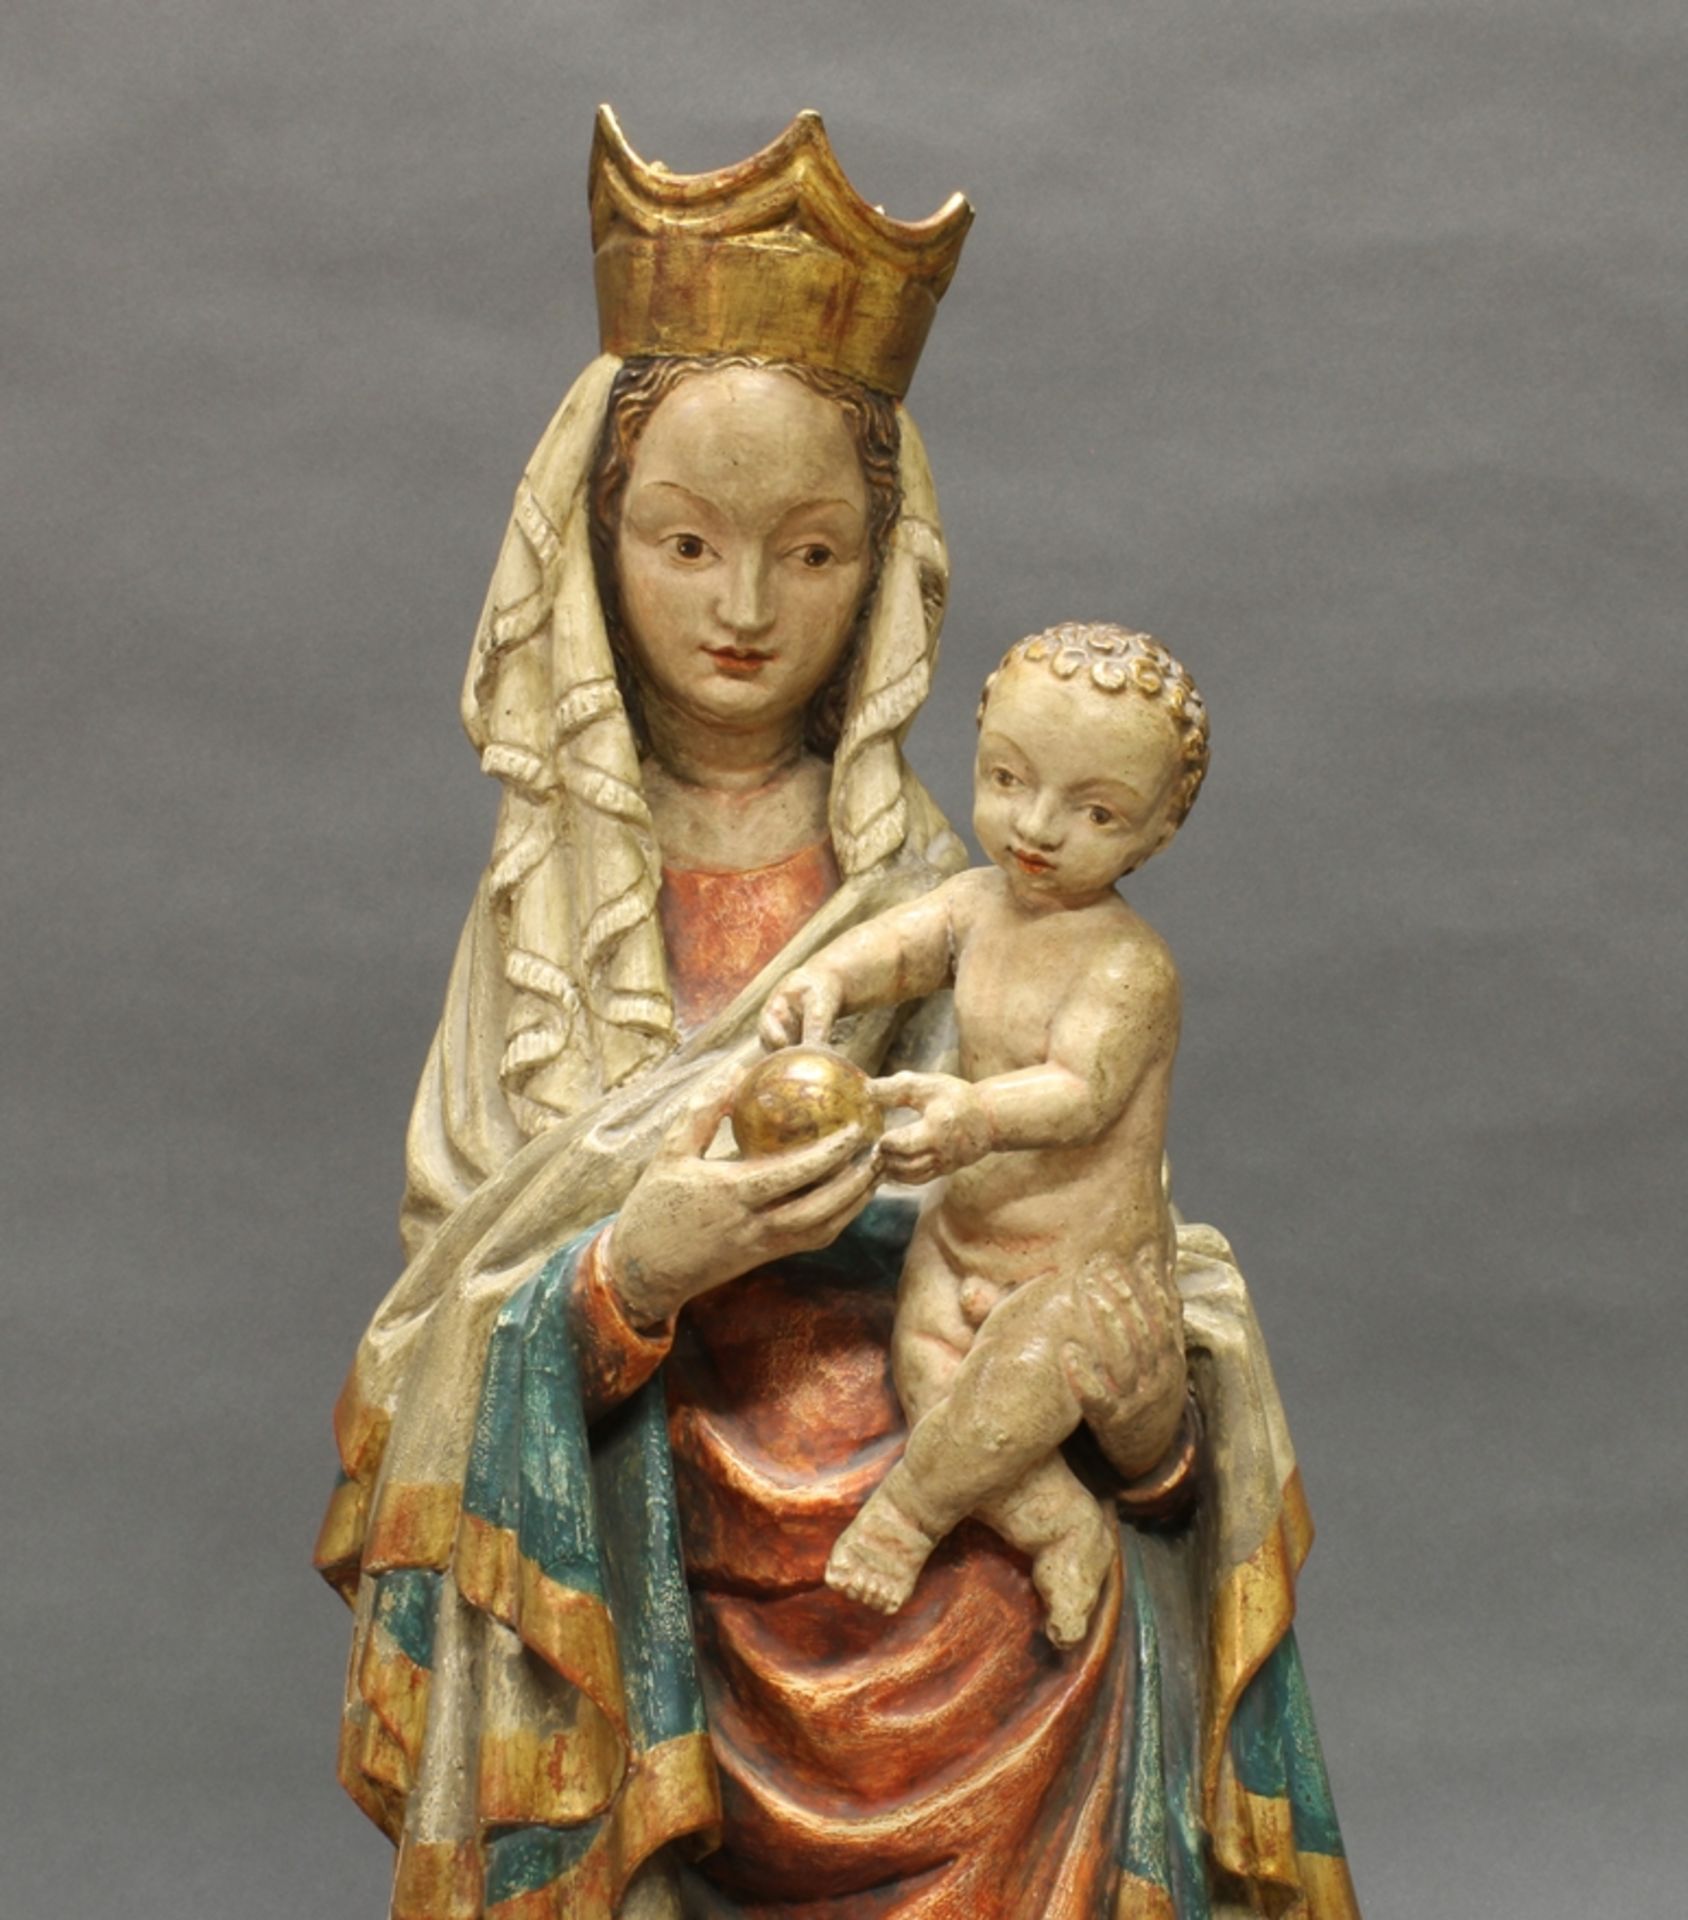 Skulptur, Holz geschnitzt, "Schöne Madonna", im gotischen Stil, 20. Jh., 73 cm hoch, verso gehöhlt, - Bild 5 aus 5